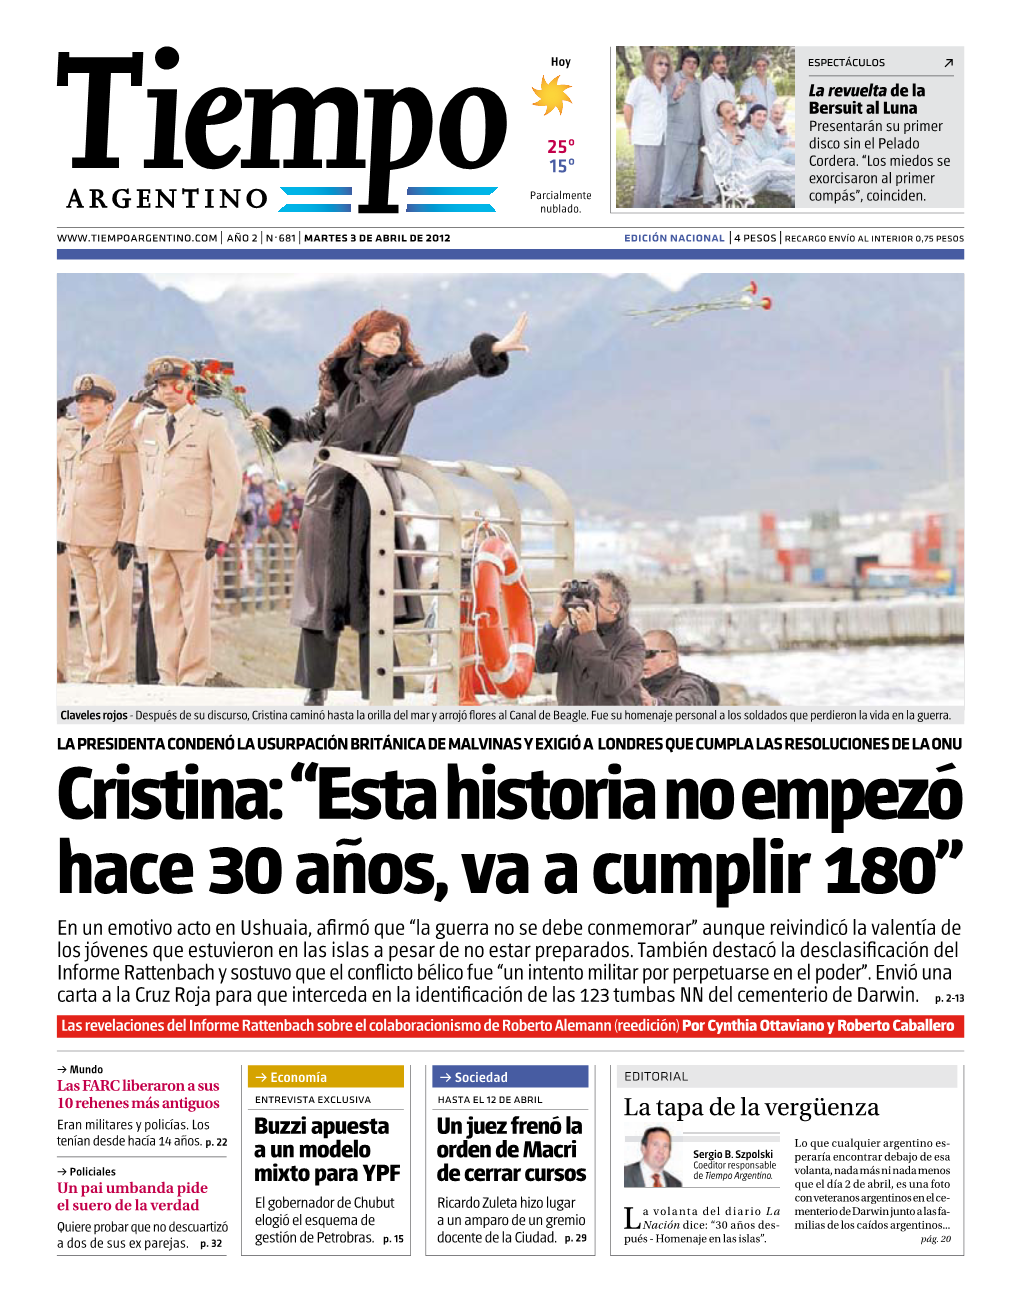 Cristina: “Esta Historia No Empezó Hace 30 Años, Va a Cumplir 180”